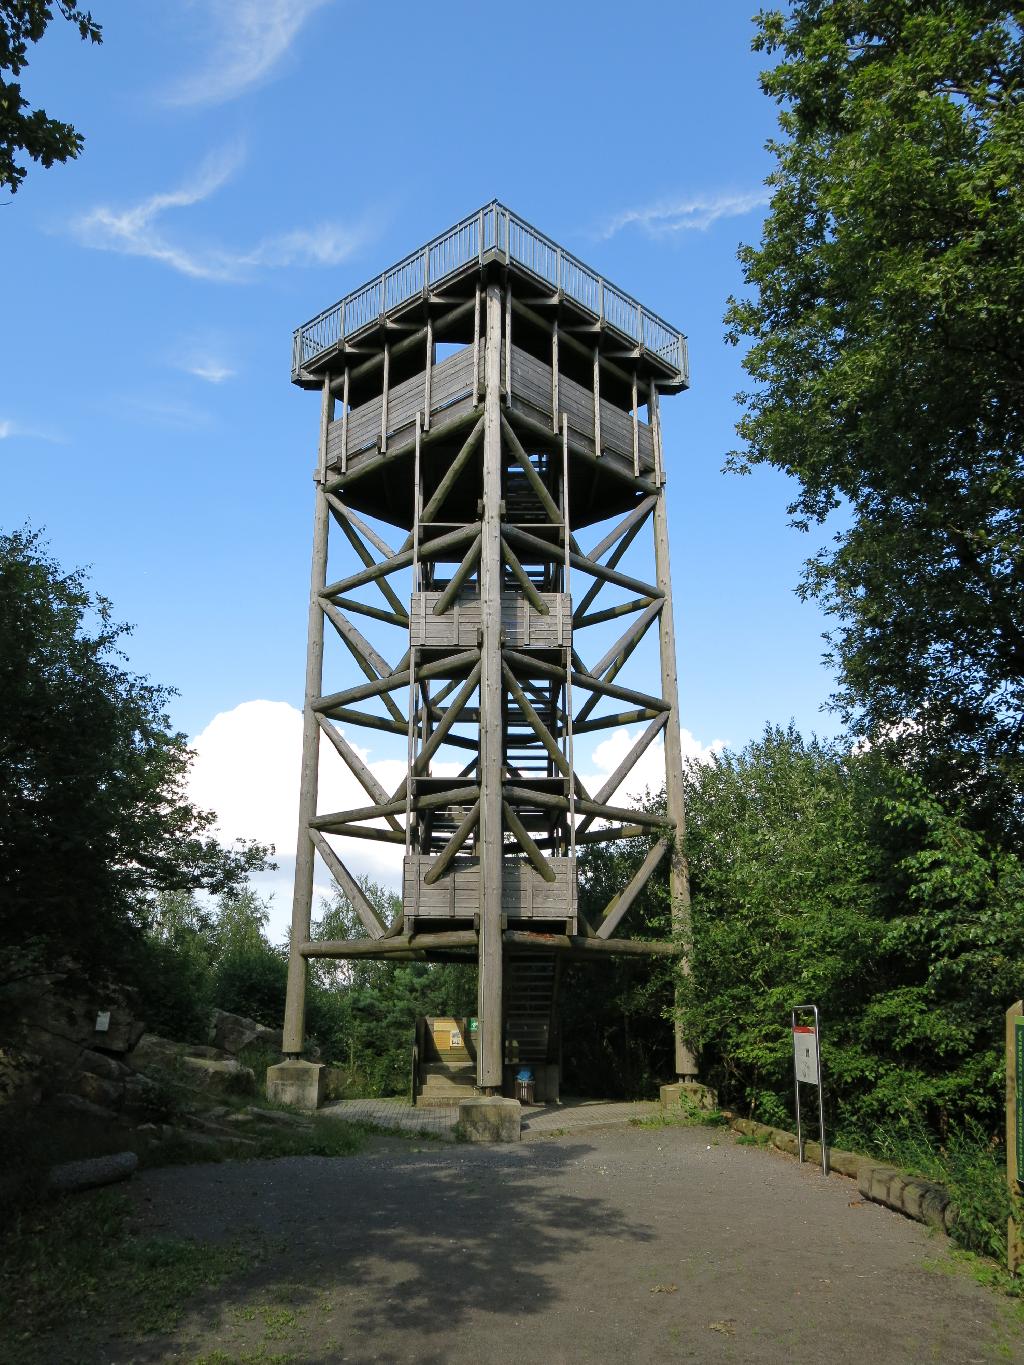 Wintersteinturm in Ober-Mörlen